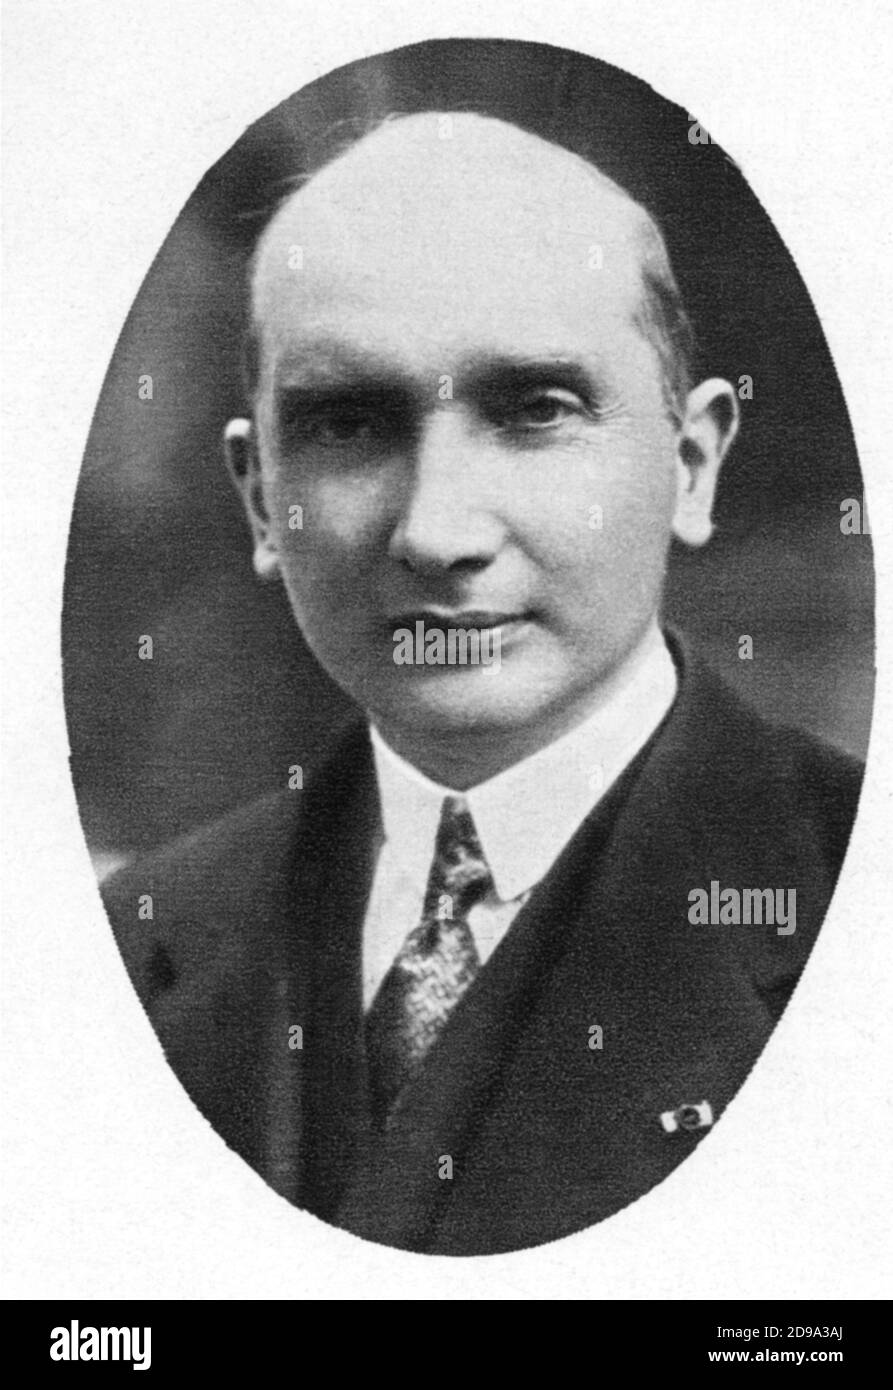 1928 : AOÛT ZALESKI ( ZALEWSKI , 1883 – 1972 ) était un économiste polonais , un homme politique et un diplomate . Ministre des affaires étrangères de la République de Pologne, il a été président de la Pologne au sein du gouvernement polonais en exil . - POLITICO - POLITICA - POLITIC - foto storiche - foto storica - portrait - ritratto - HISTOIRE - POLOGNE - POLONIA - col - colletto - cravate - cravatta --- Archivio GBB Banque D'Images